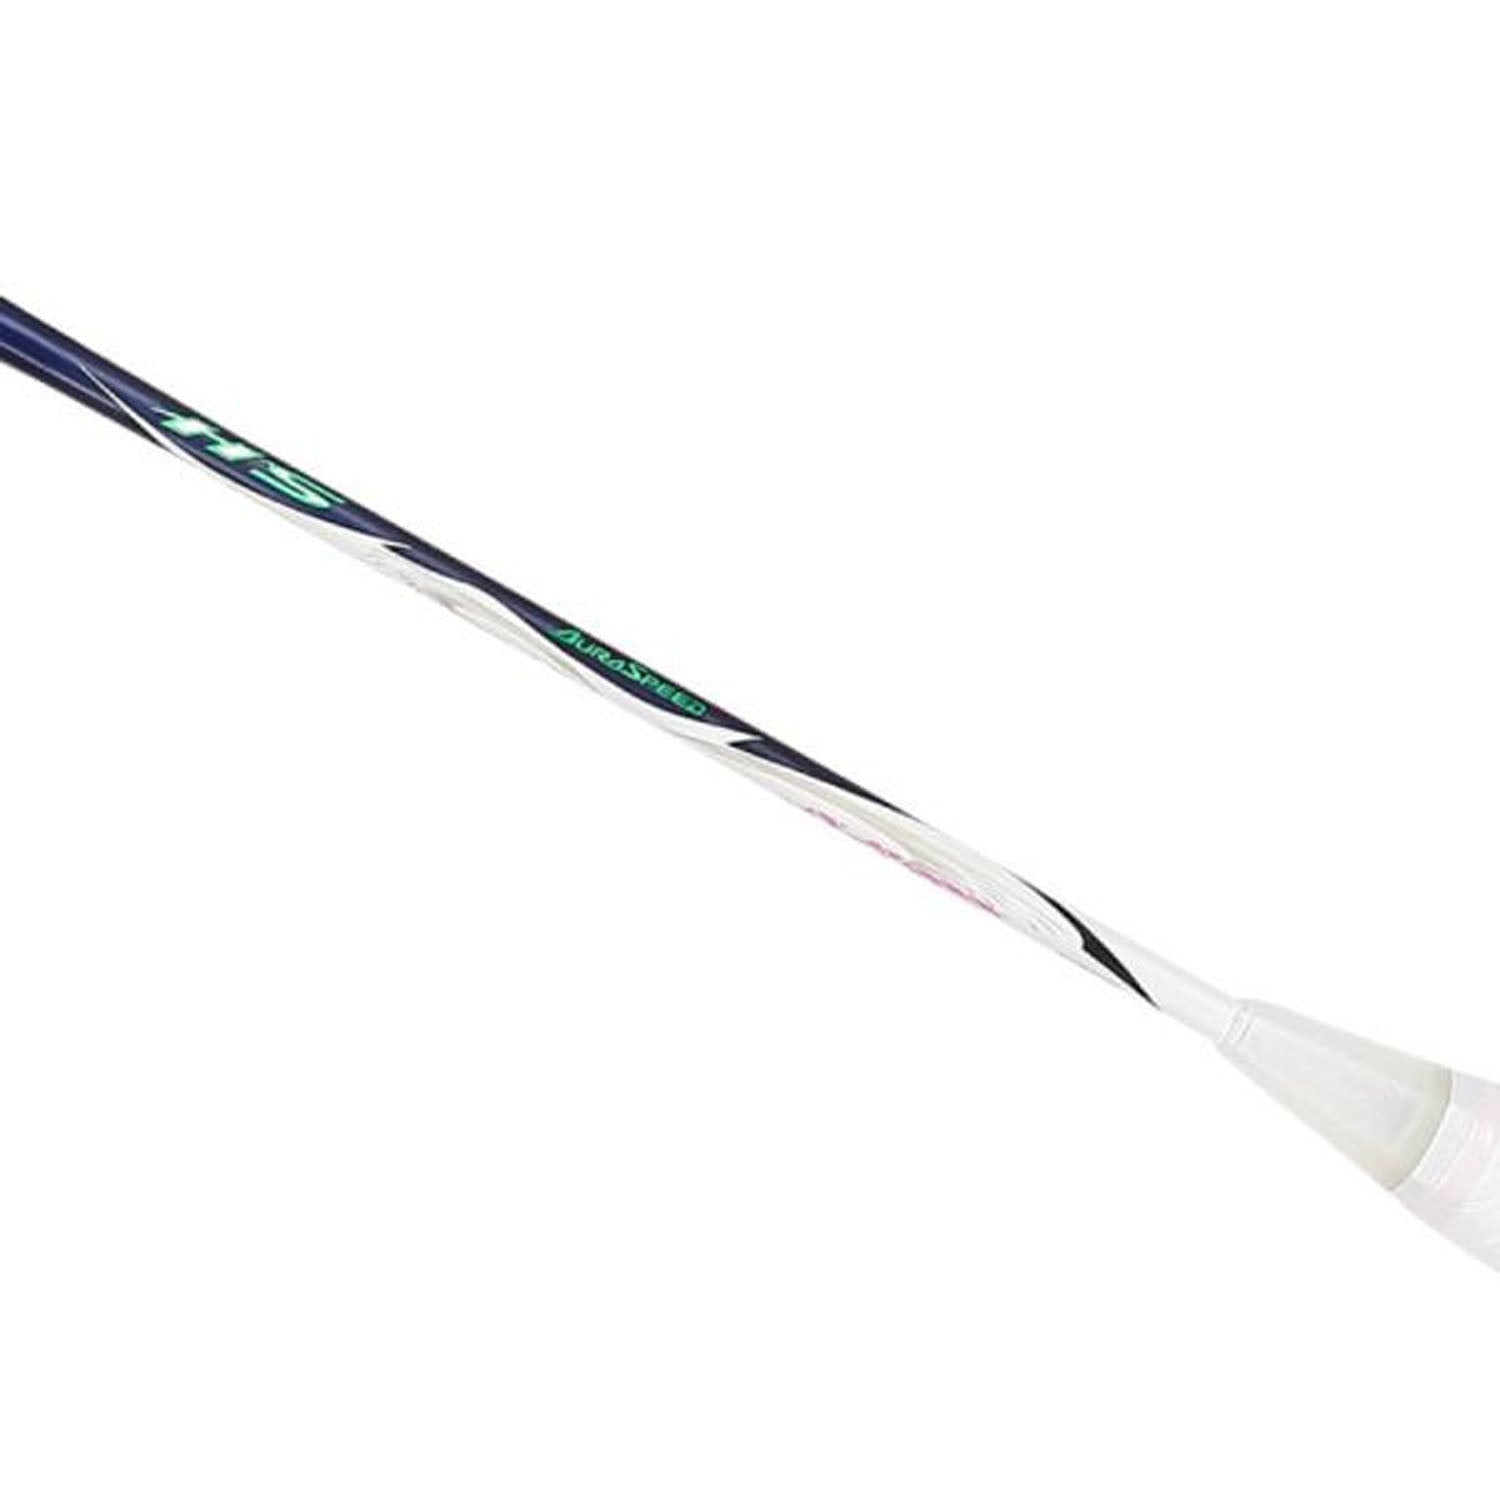 Victor Aura Speed HS Unstrung Badminton Racquet, 4U5 (Dark Mineral Blue) - Best Price online Prokicksports.com